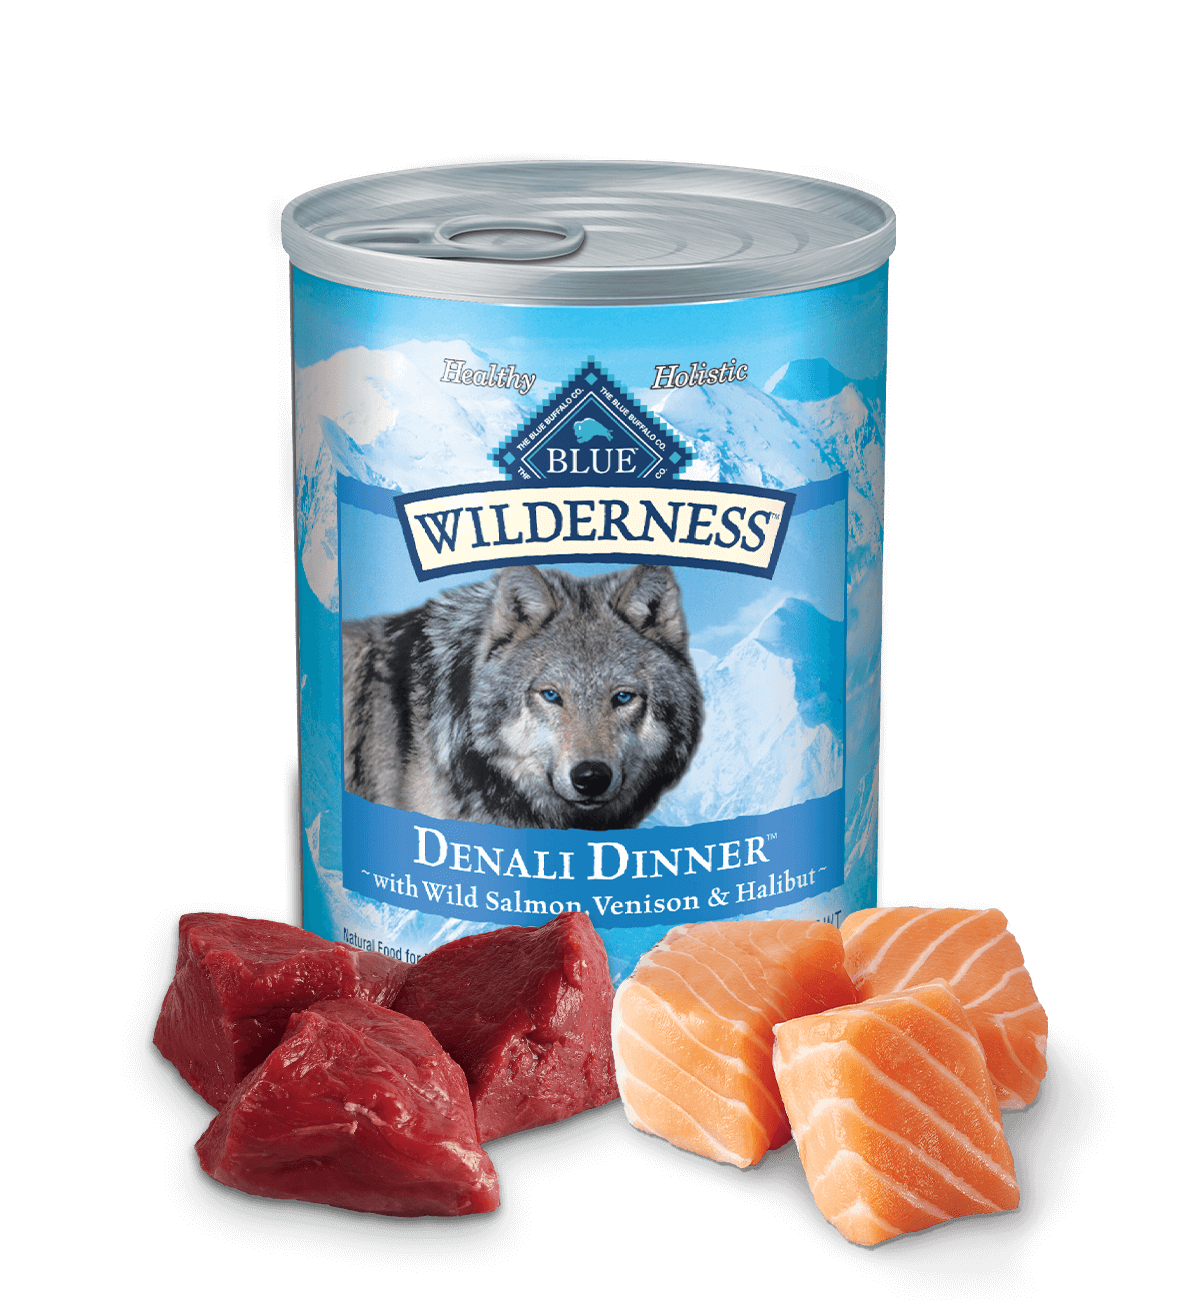 blue wilderness denali dinner wild salmon, venison & halibut dog wet food